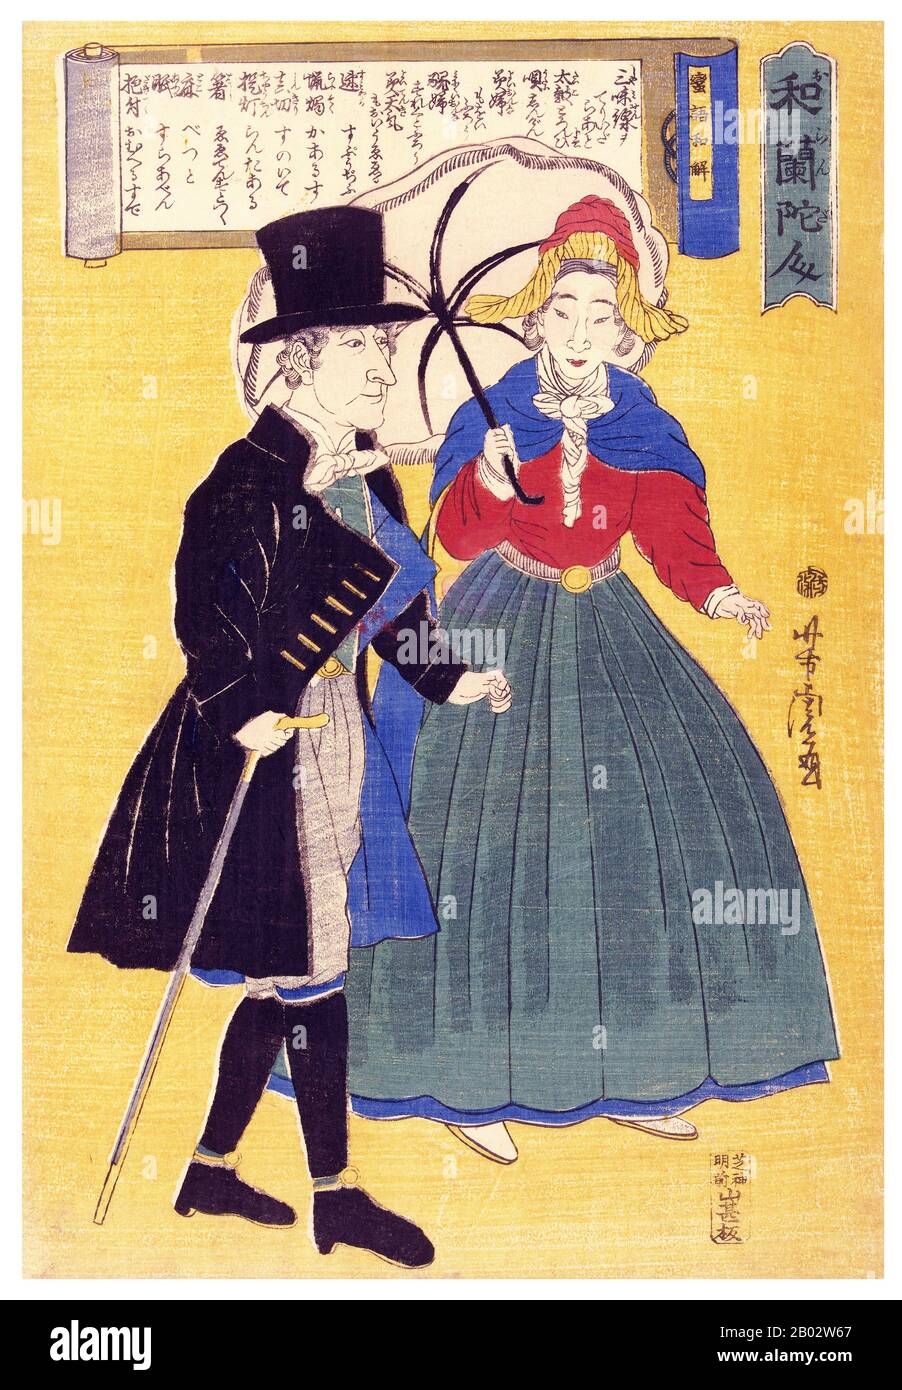 Utagawa Yoshitora è stato un designer di stampe di blocchi di legno giapponesi ukiyo-e e un illustratore di libri e giornali che è stato attivo da circa 1850 a circa 1880. È nato a Edo (Tokyo moderna), ma non si conosce né la data di nascita né la data di morte. Fu un importante allievo di Utagawa Kuniyoshi che eccelleva nelle stampe di guerrieri, attori kabuki, belle donne e stranieri (Yokohama-e). Foto Stock